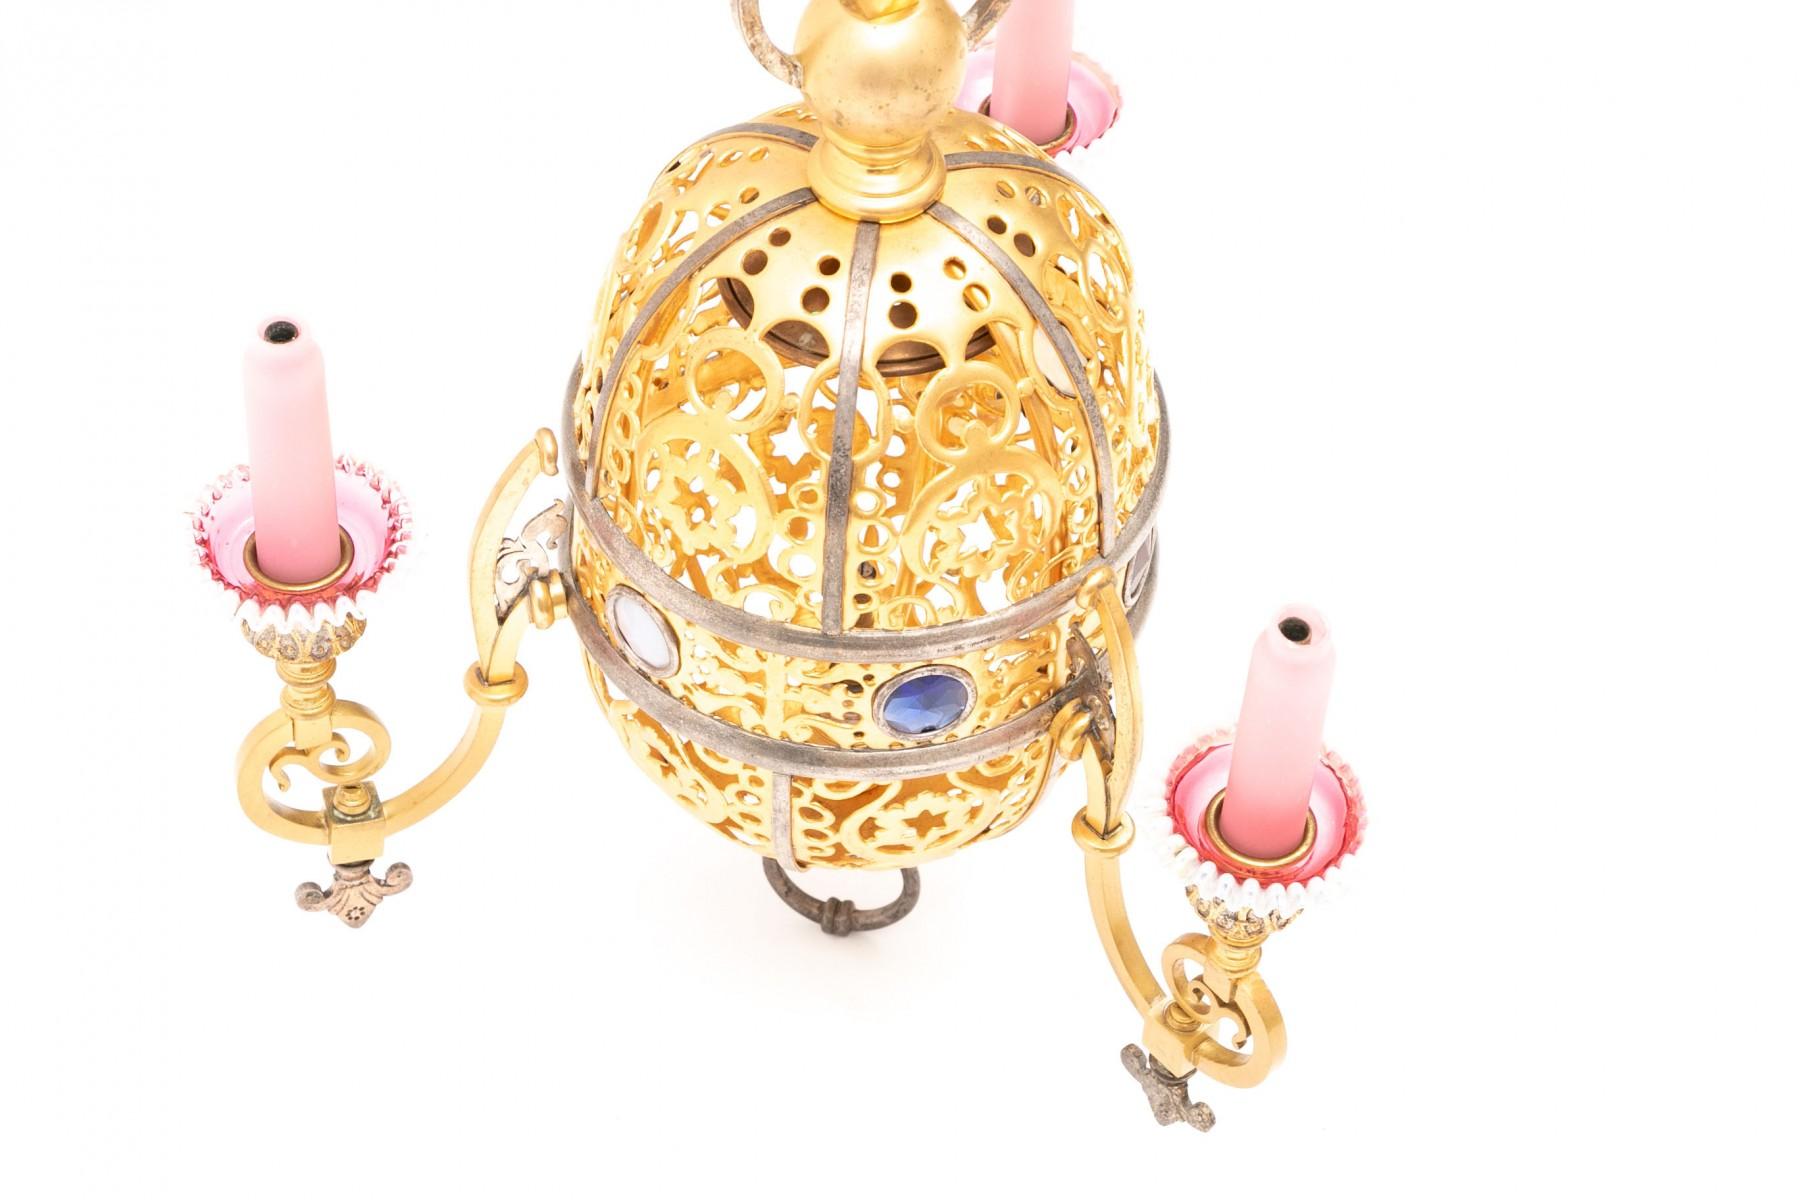 Vergoldete Hängelampe im türkischen Stil mit eingelegten Glasjuwelen, rosafarbenen Glaskerzendeckeln und rosafarbenen/weißen Glastropfenschalen.  Konzipiert für Gaslicht mit drei Kerzenarmen und einem Innenlicht und mit den originalen Gasbeschlägen.